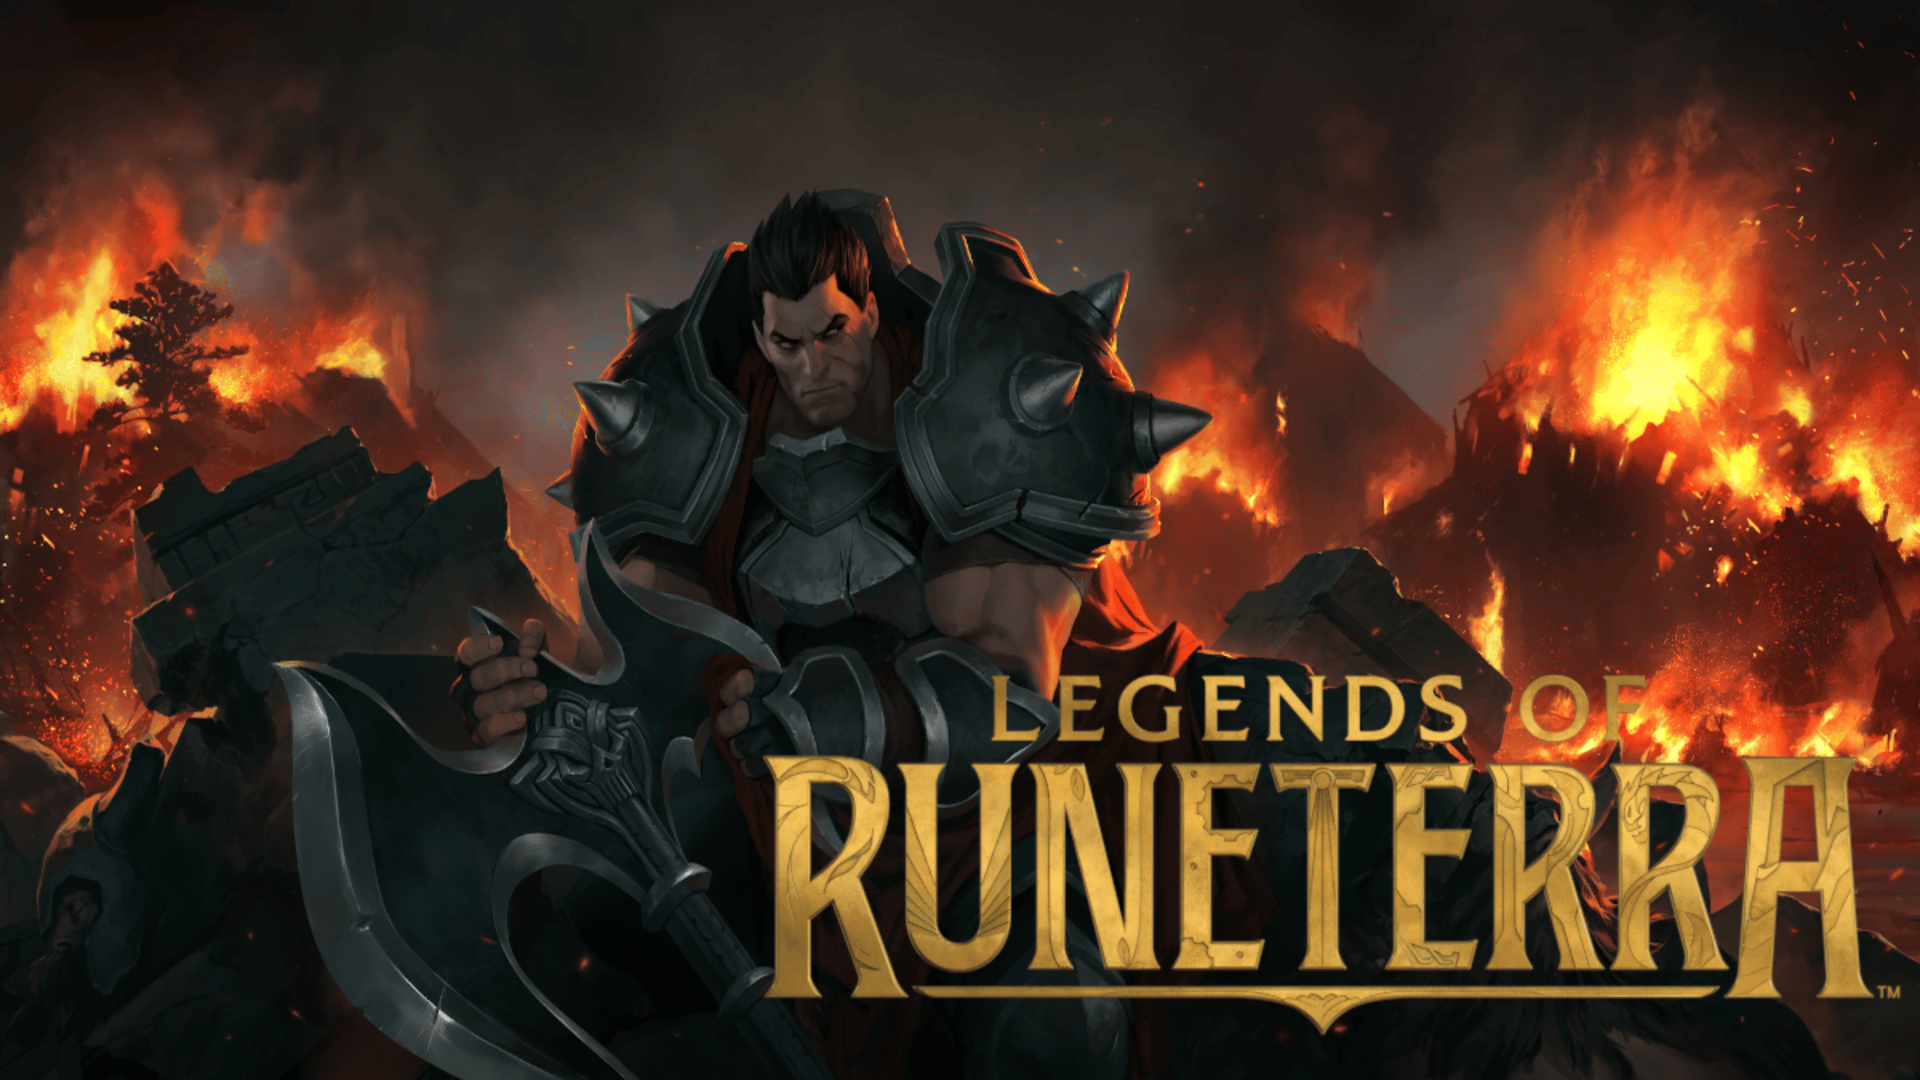 Adão negro é lançado | hora de aventura | legends of runeterra é lançado oficialmente. | 7c765ba1 legends of runeterra pdvg | hora de aventura